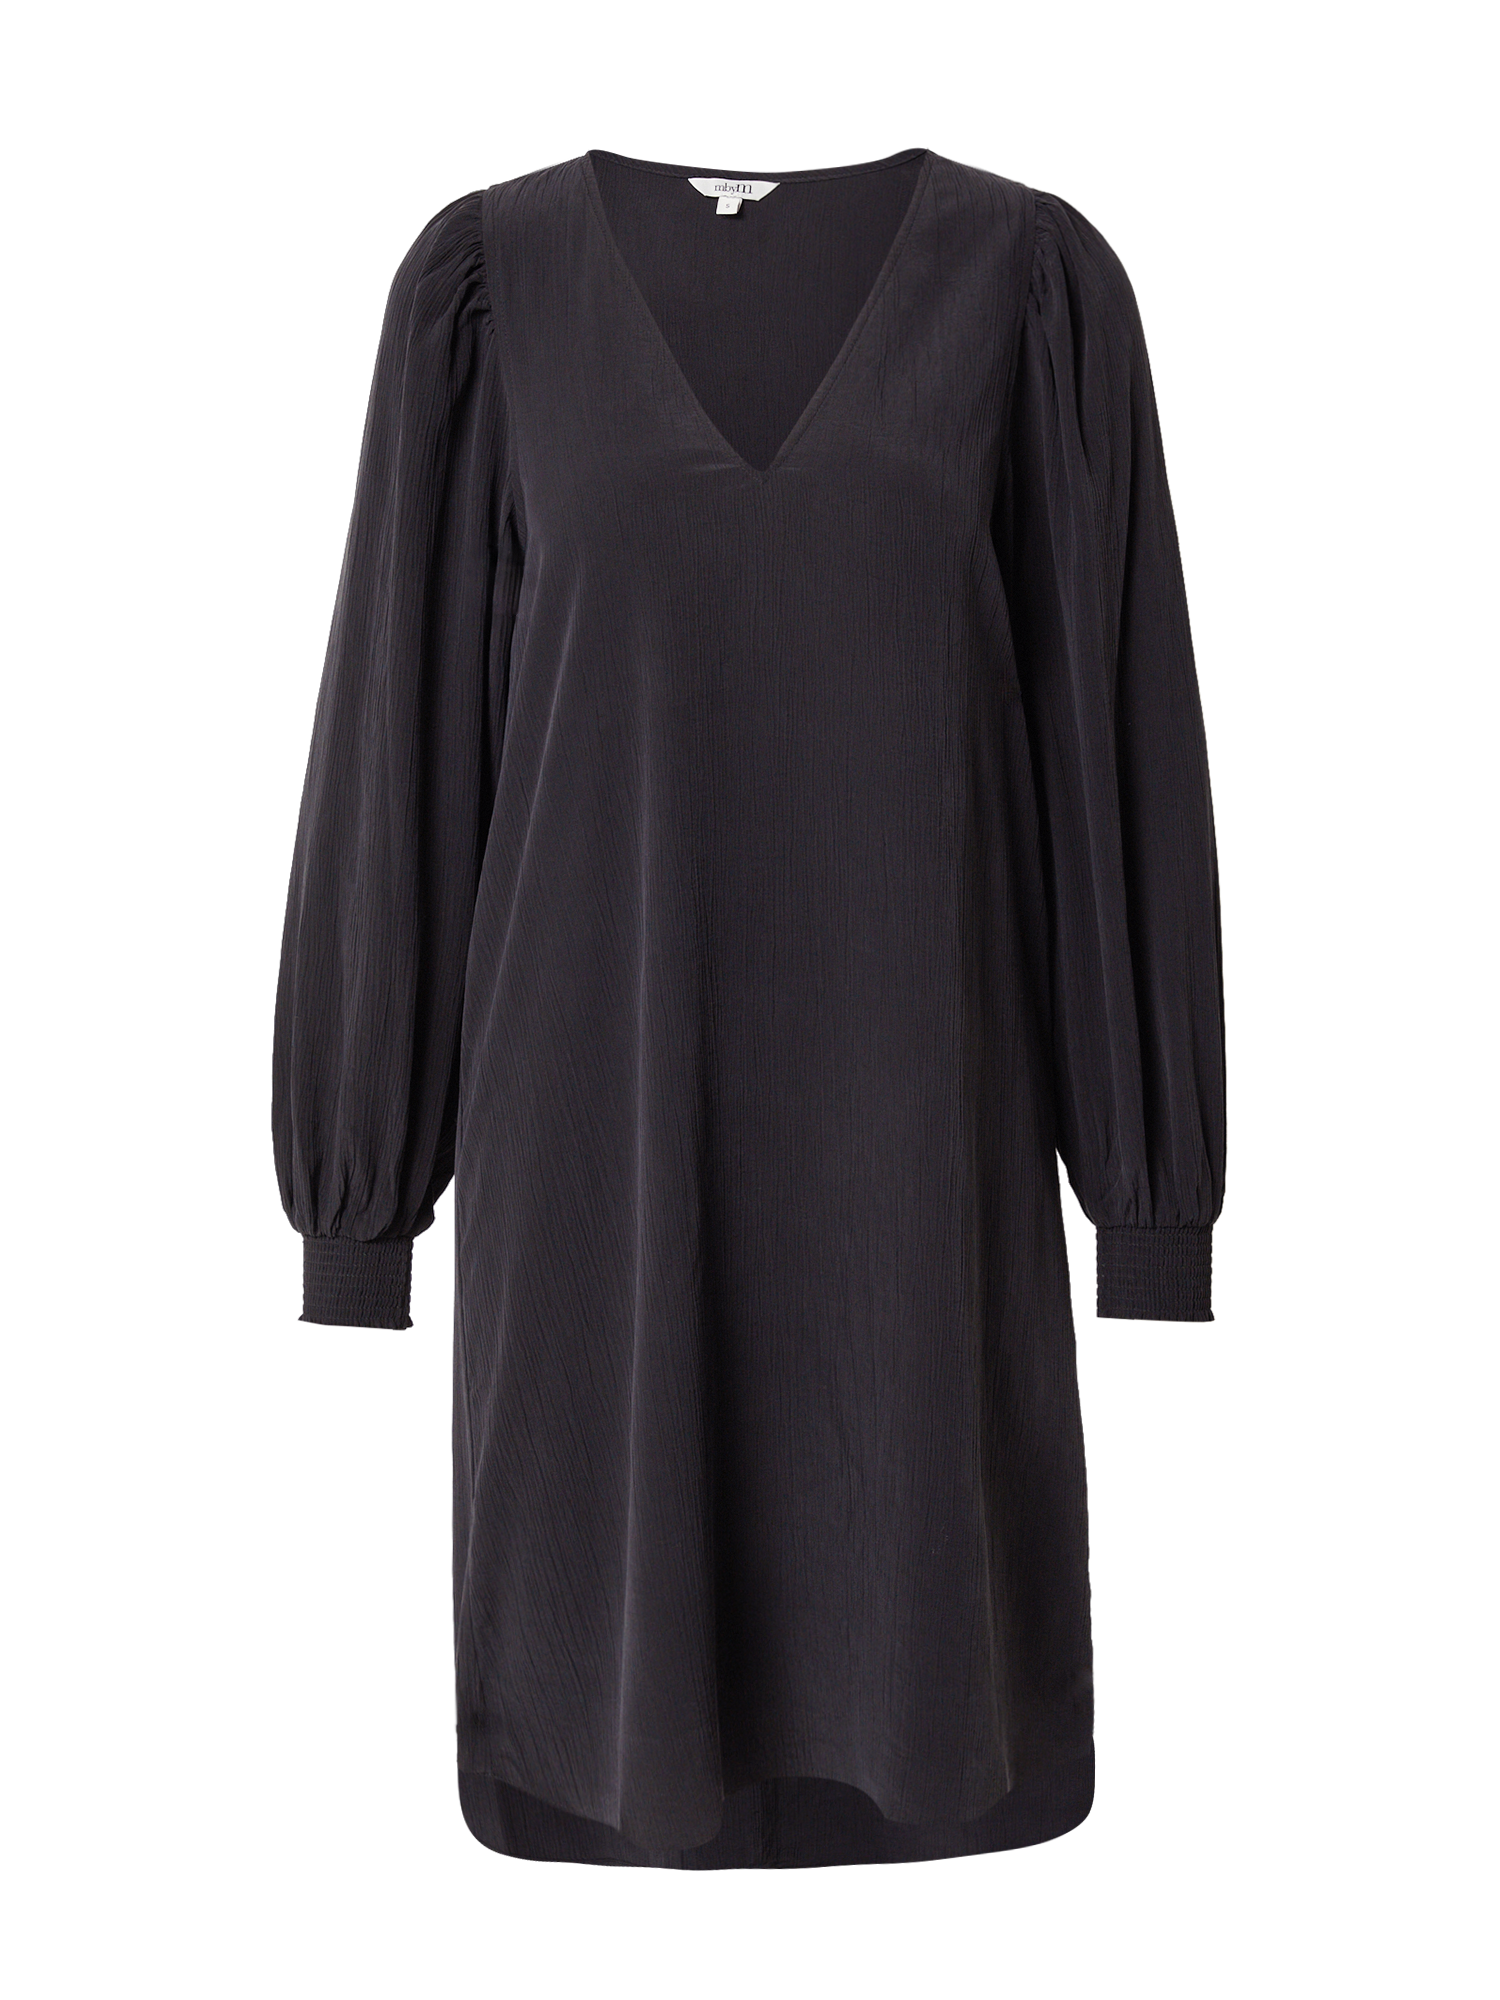 fBRGE Odzież mbym Sukienka koszulowa Embry w kolorze Czarnym 